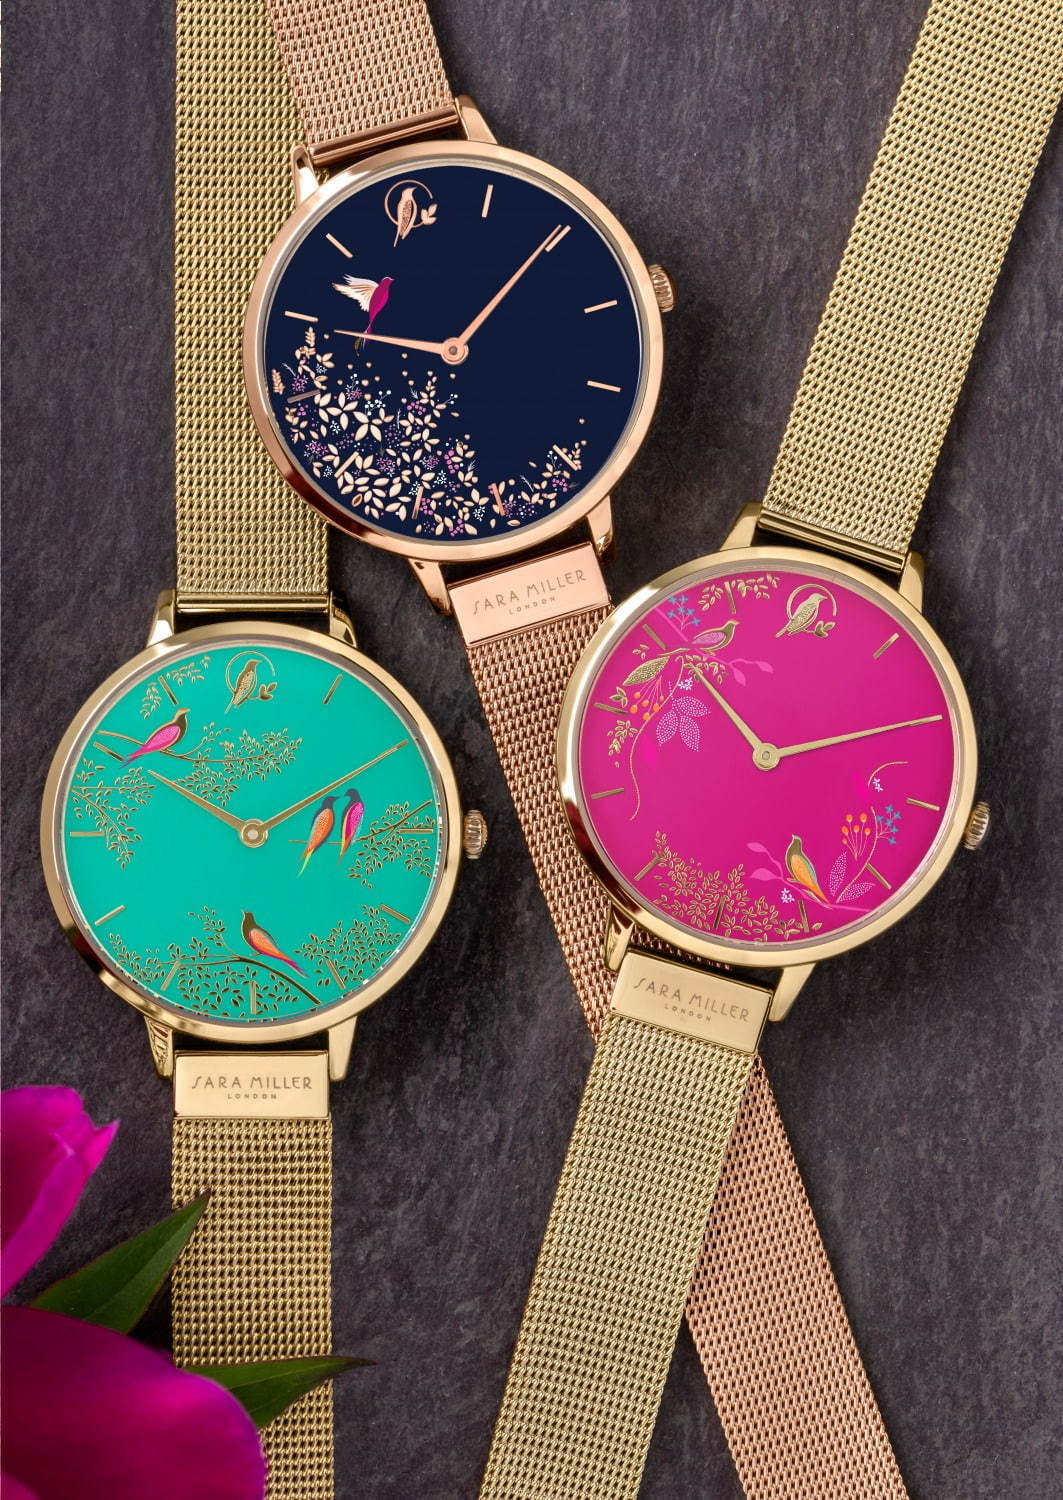 イギリス発「サラミラーロンドン」の腕時計が日本初上陸、花や鳥を描い